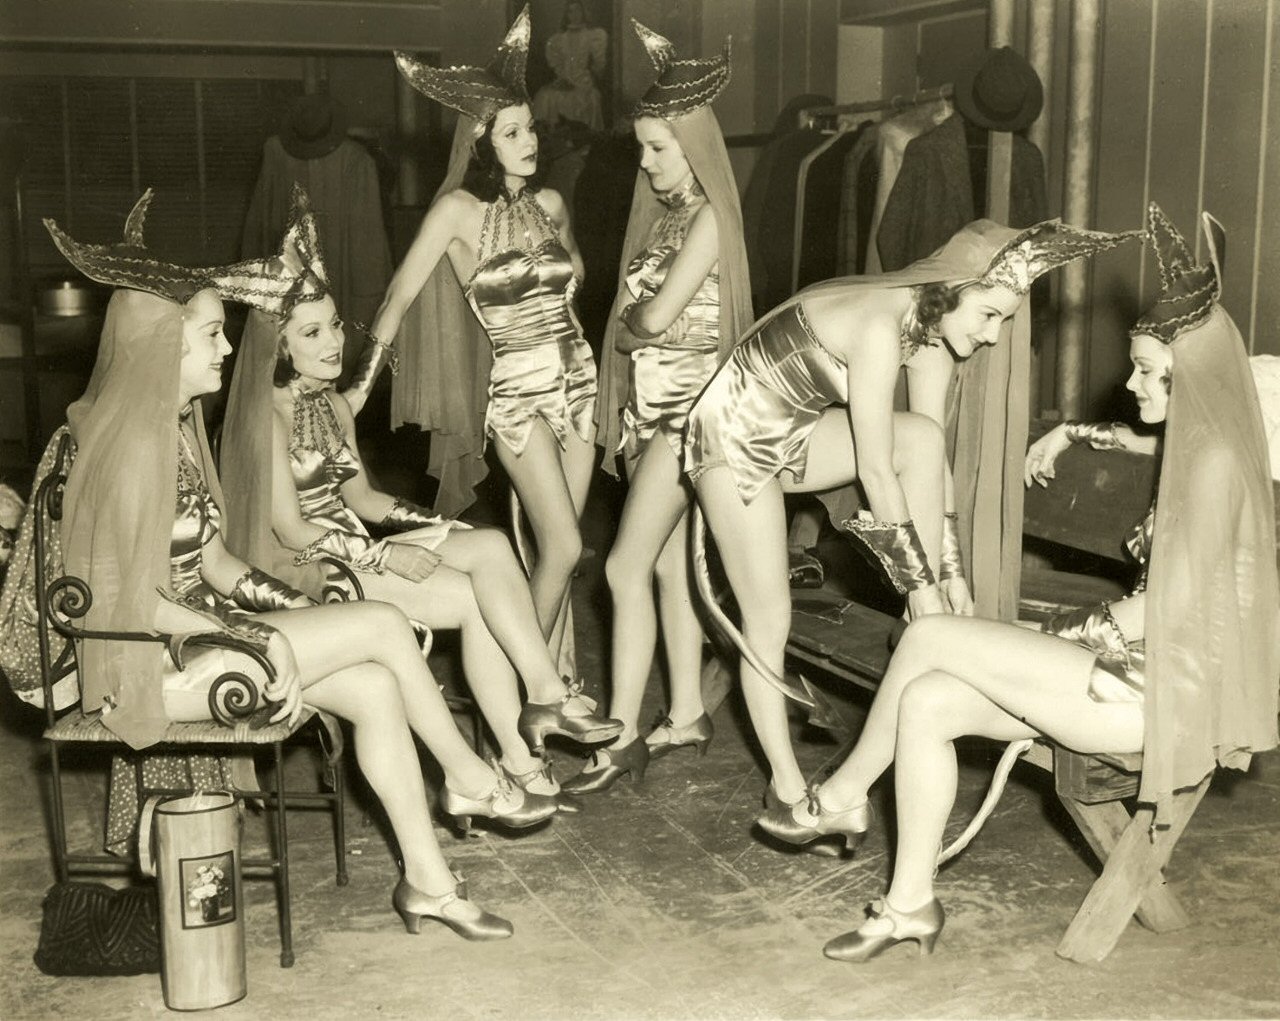 Chorus Girls From The 30's